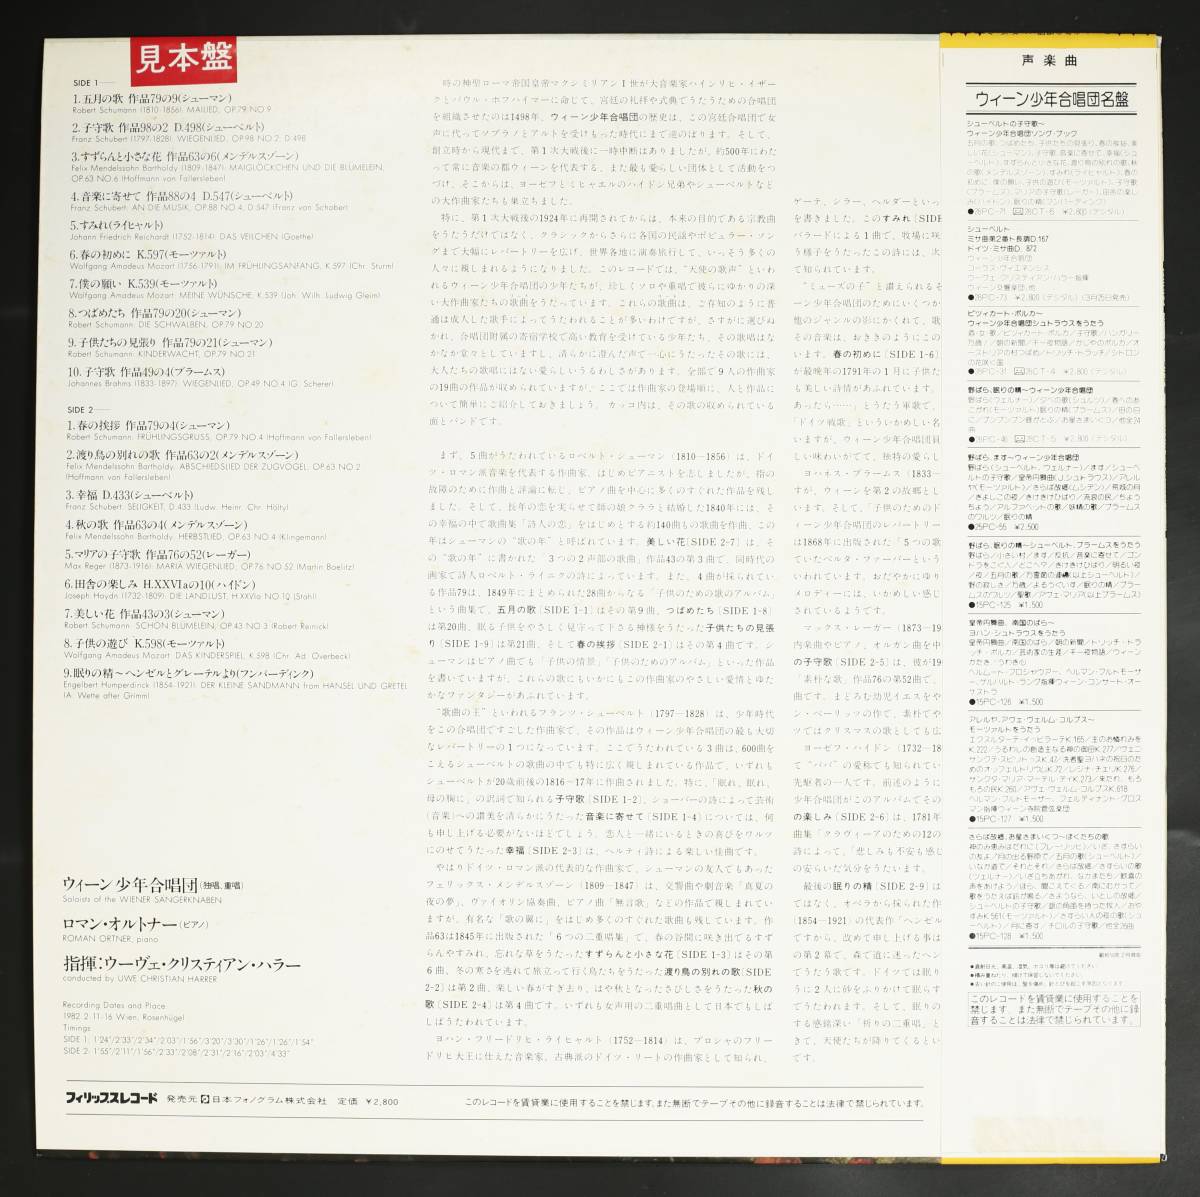 【PromoLP】ウィーン少年合唱団/シューベルトの子守歌(並良品,PHILIPS,DIGITAL,1982,蘭メタル)_画像2